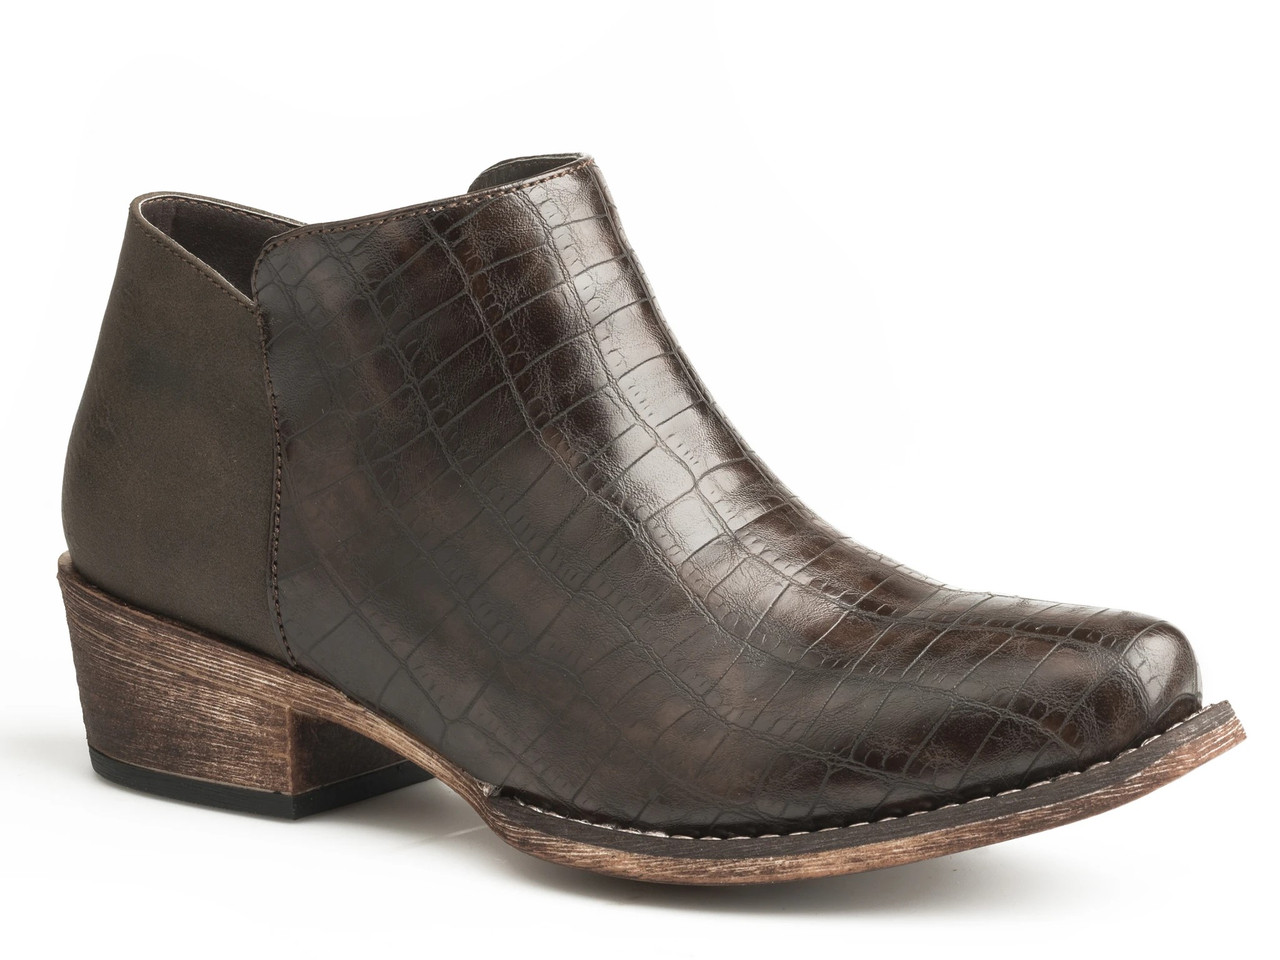 Roper Women's Boots - Shorty - Brown - Billy's Western Wear